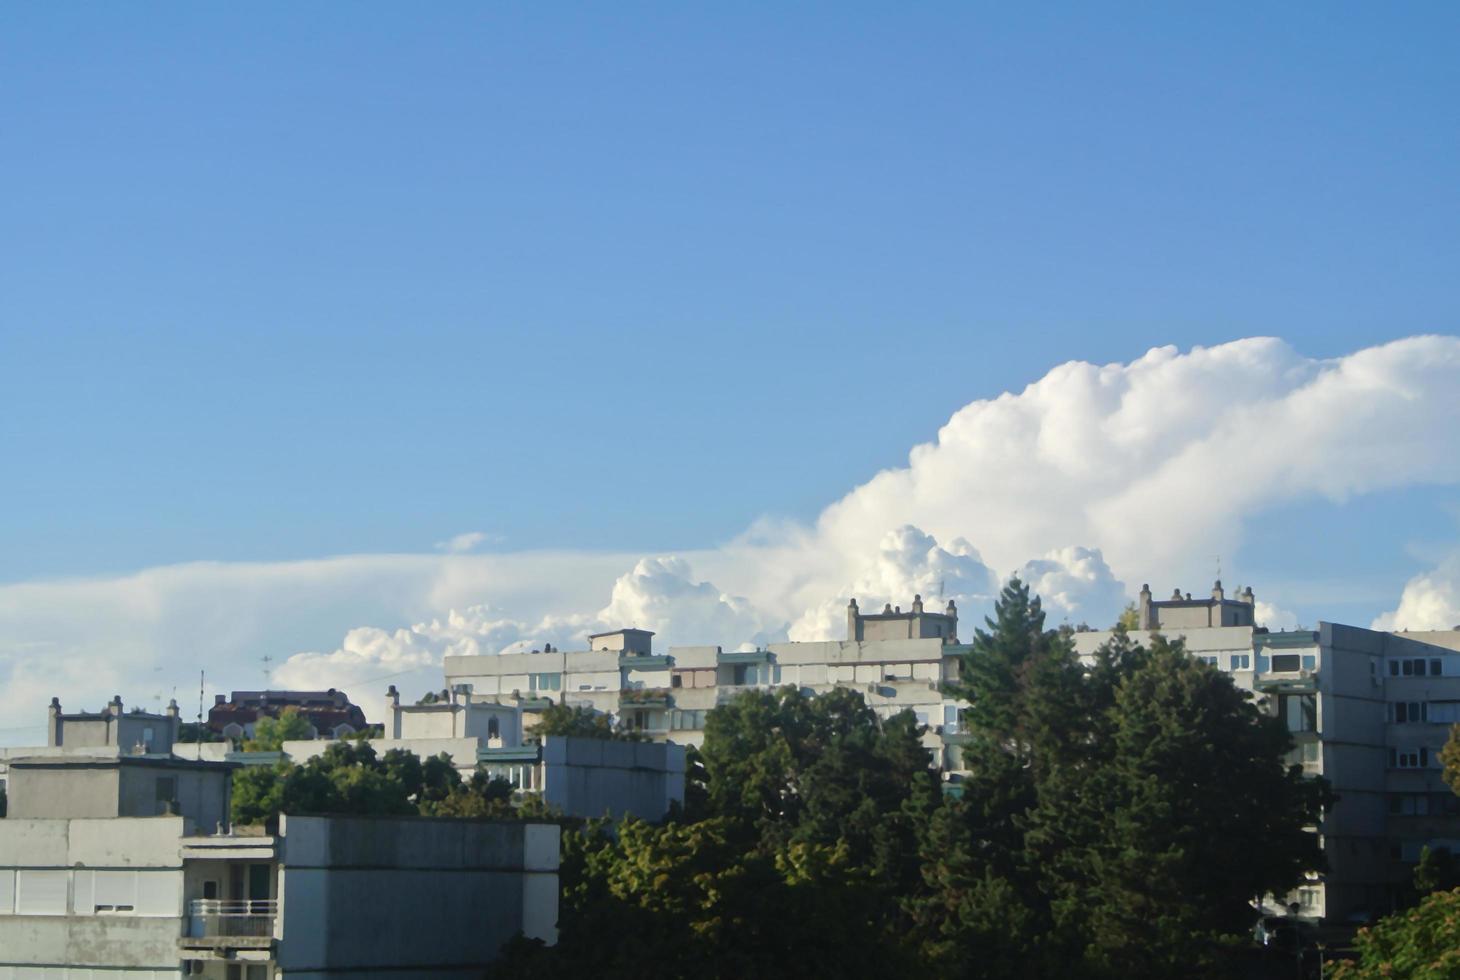 schöne himmel und wolken über gebäuden in der stadt, serbien, belgrad 15.9.2022 foto